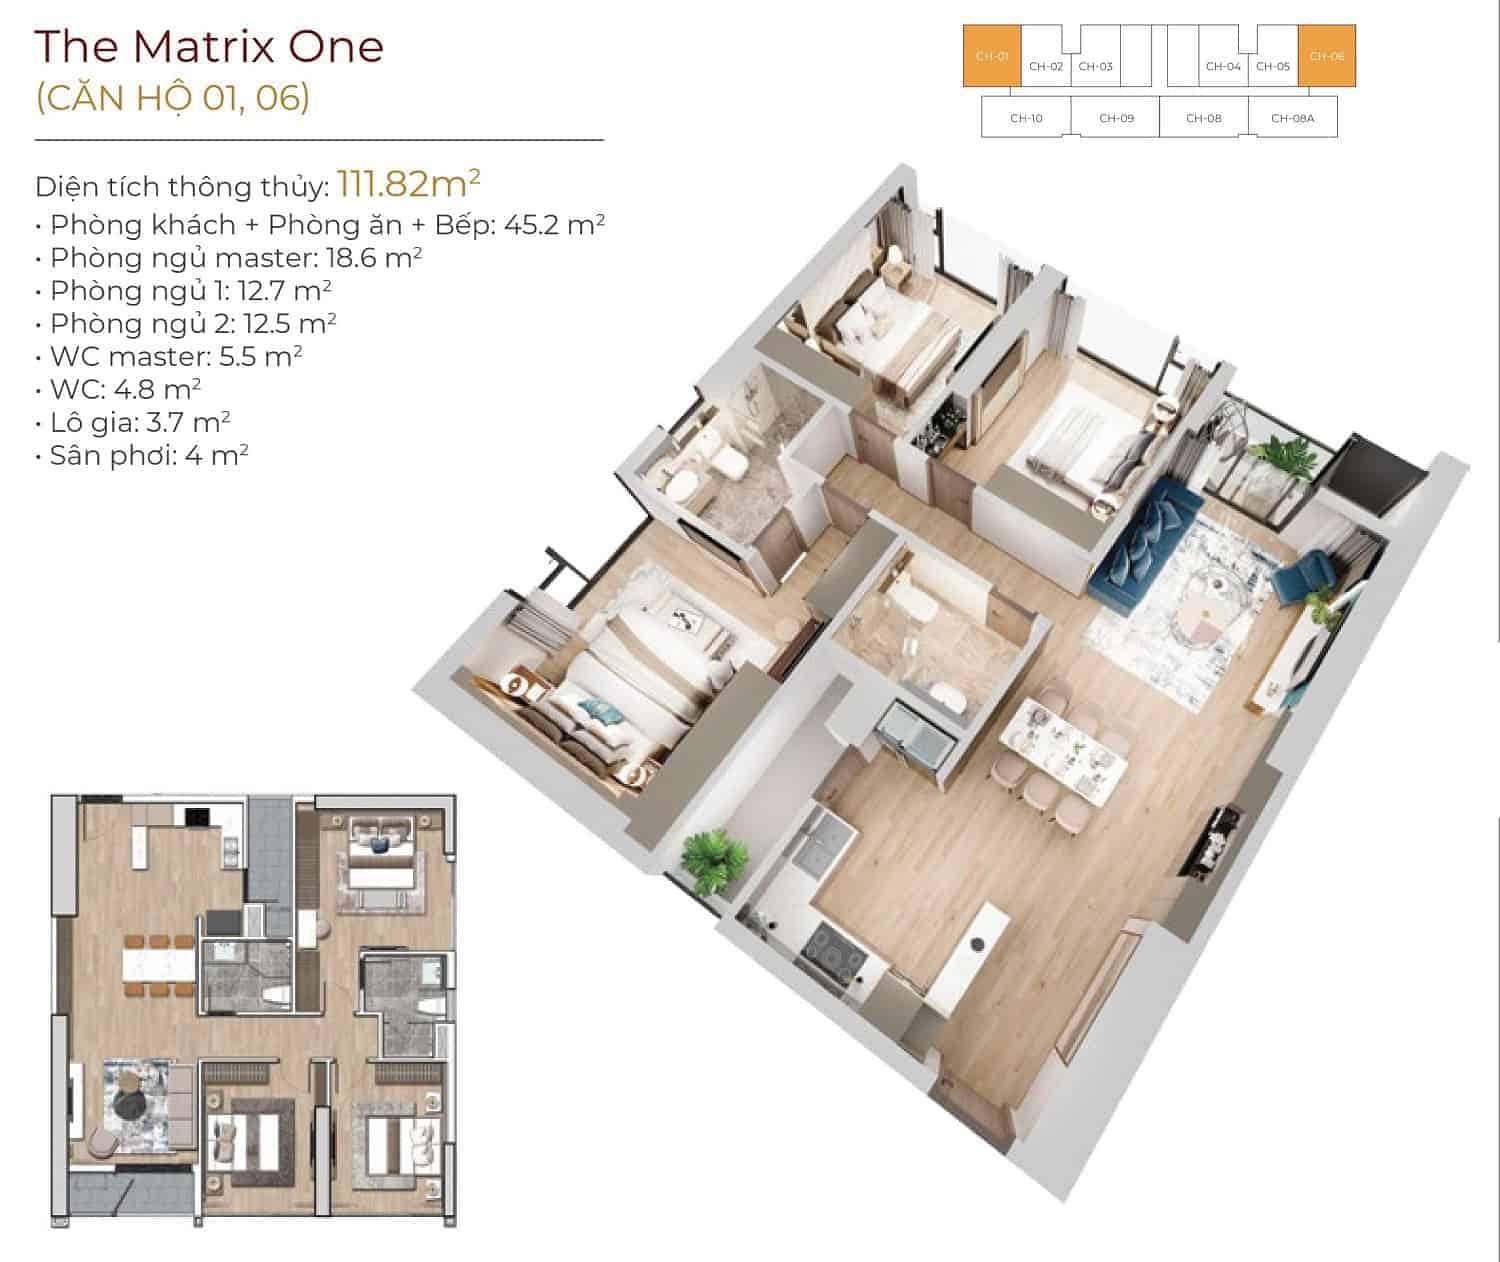 Thiết kế chi tiết căn hộ 01, 06 - The Matrix One